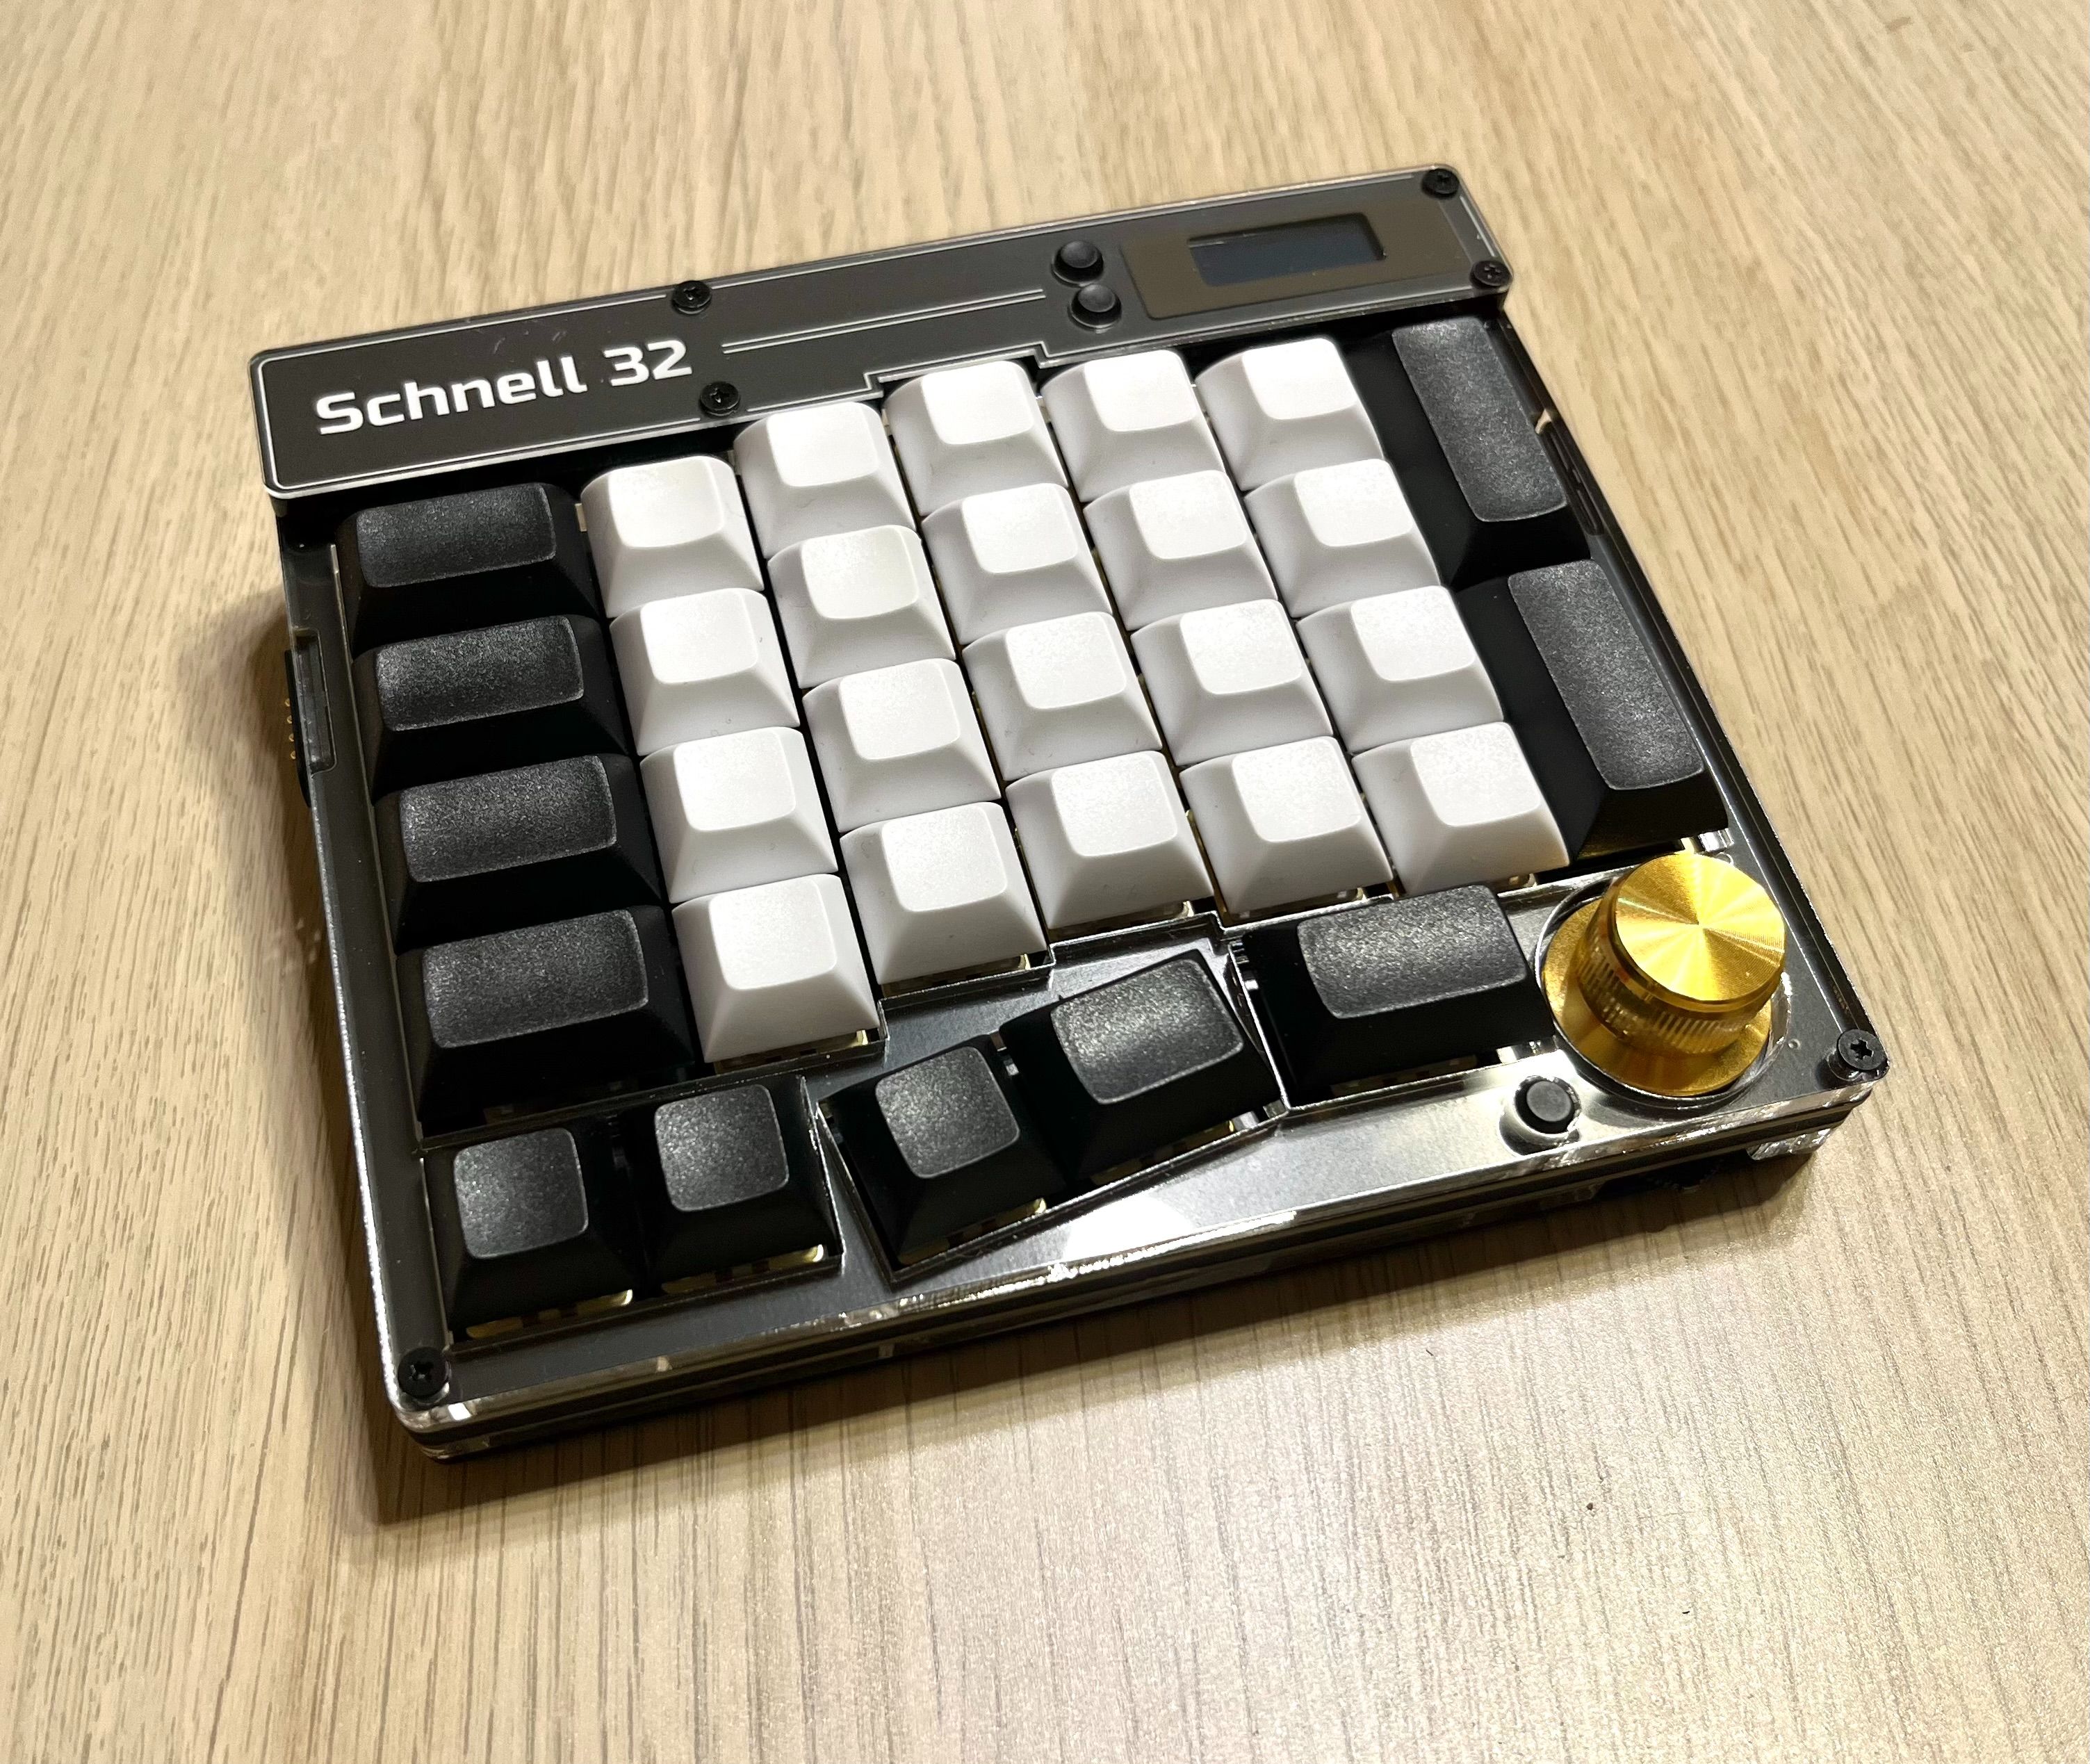 Schnell 32 單手快捷鍵盤（目前預計製作時間 2~3 周）